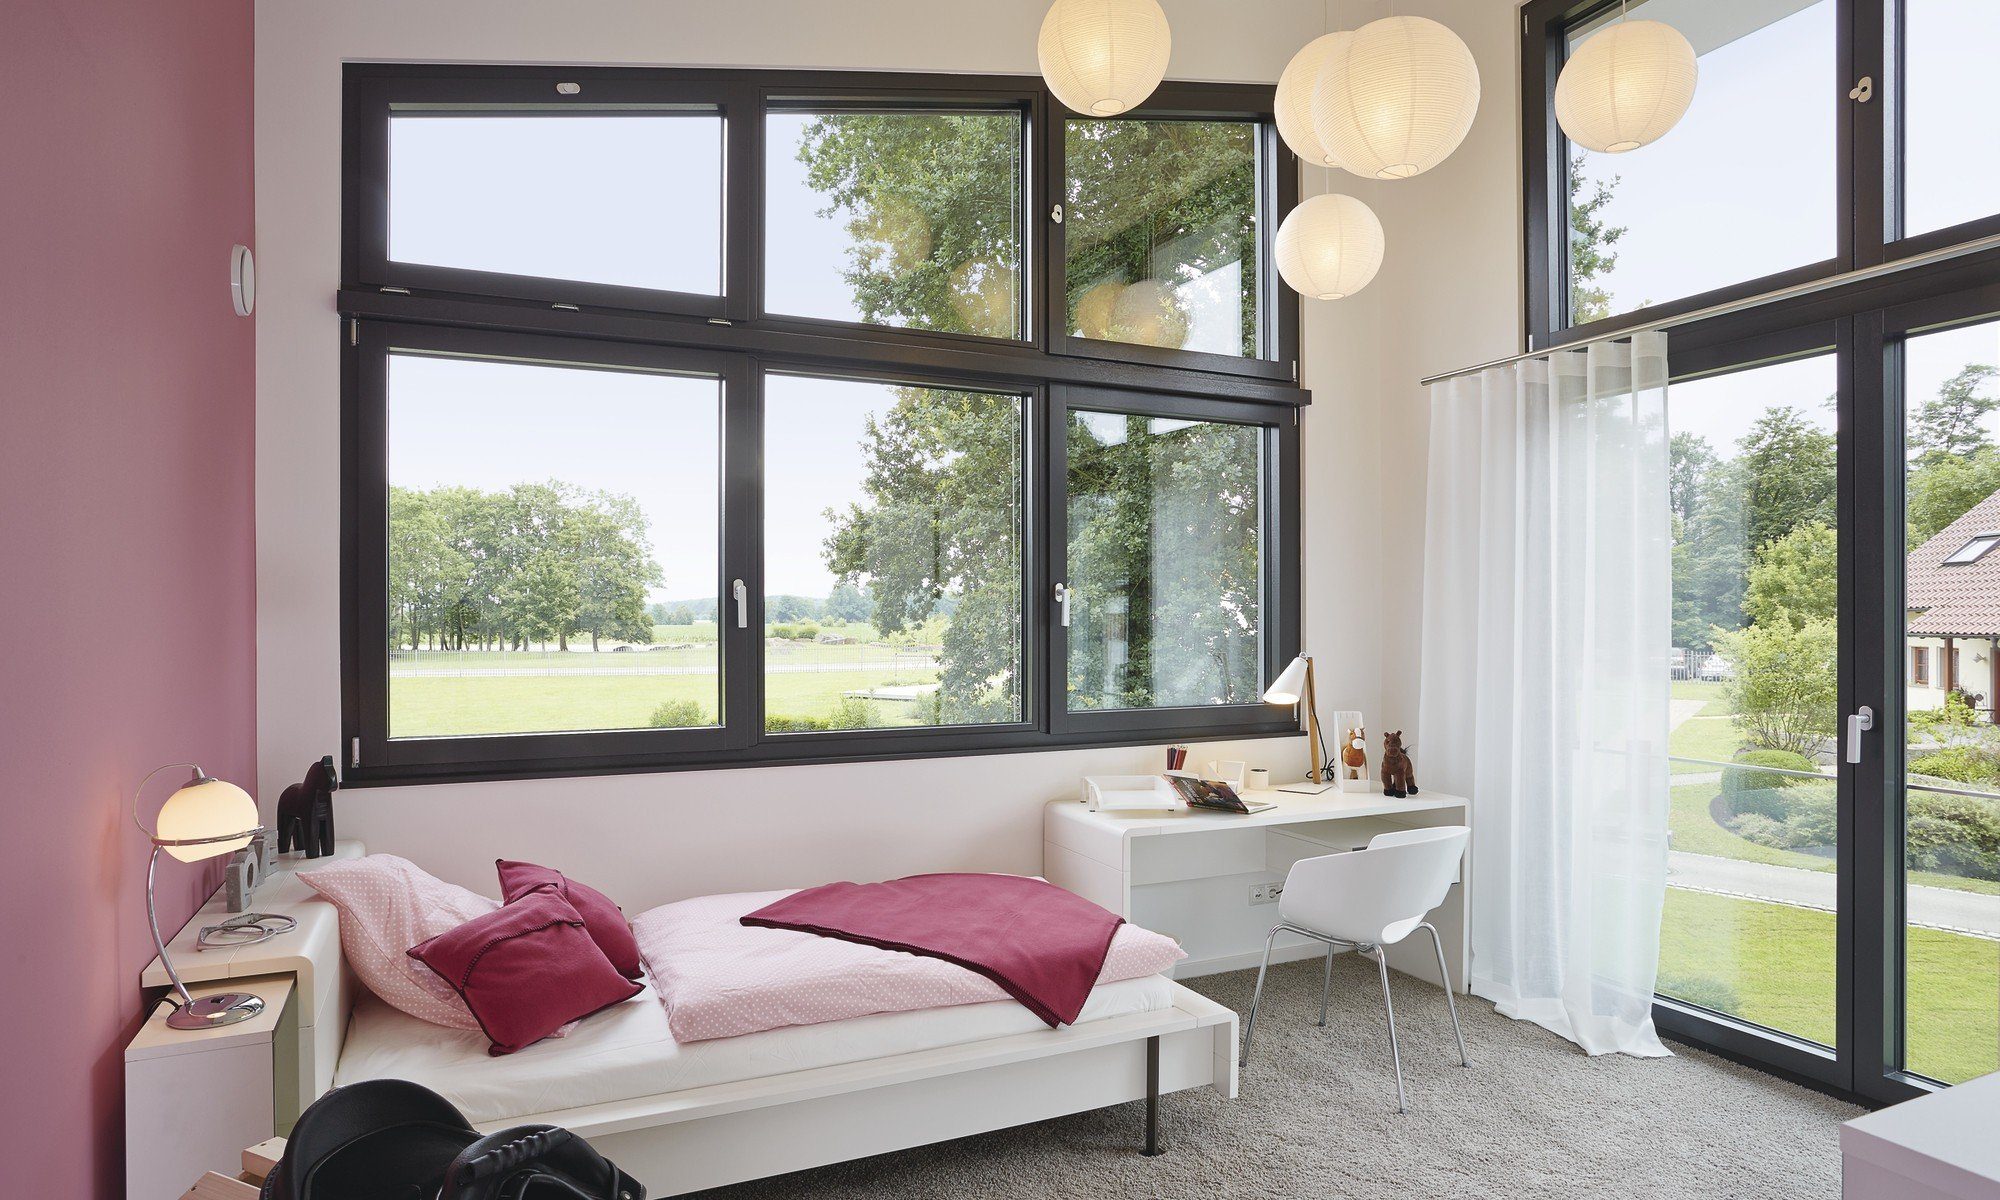 Musterhaus im Erlenpark - Ein Schlafzimmer mit einem großen Fenster - Welt des Lebens